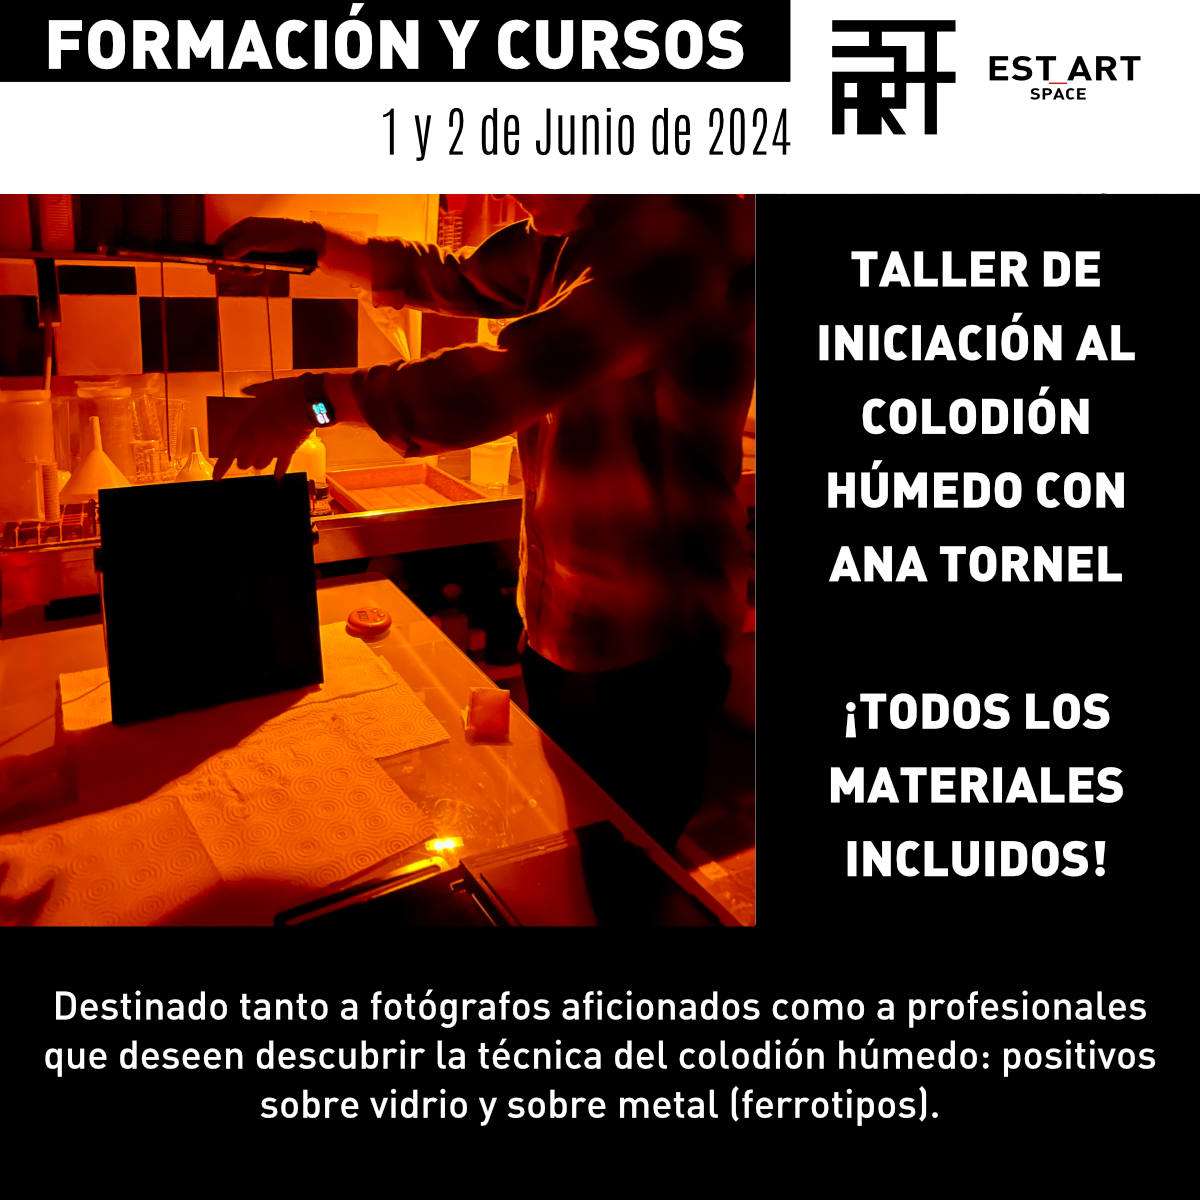 TALLER DE INICIACIÓN AL COLODIÓN HÚMEDO. ¡TODOS LOS MATERIALES INCLUIDOS! Ana Tornel | EST_ART Space Fomación, Alcobendas, Madrid